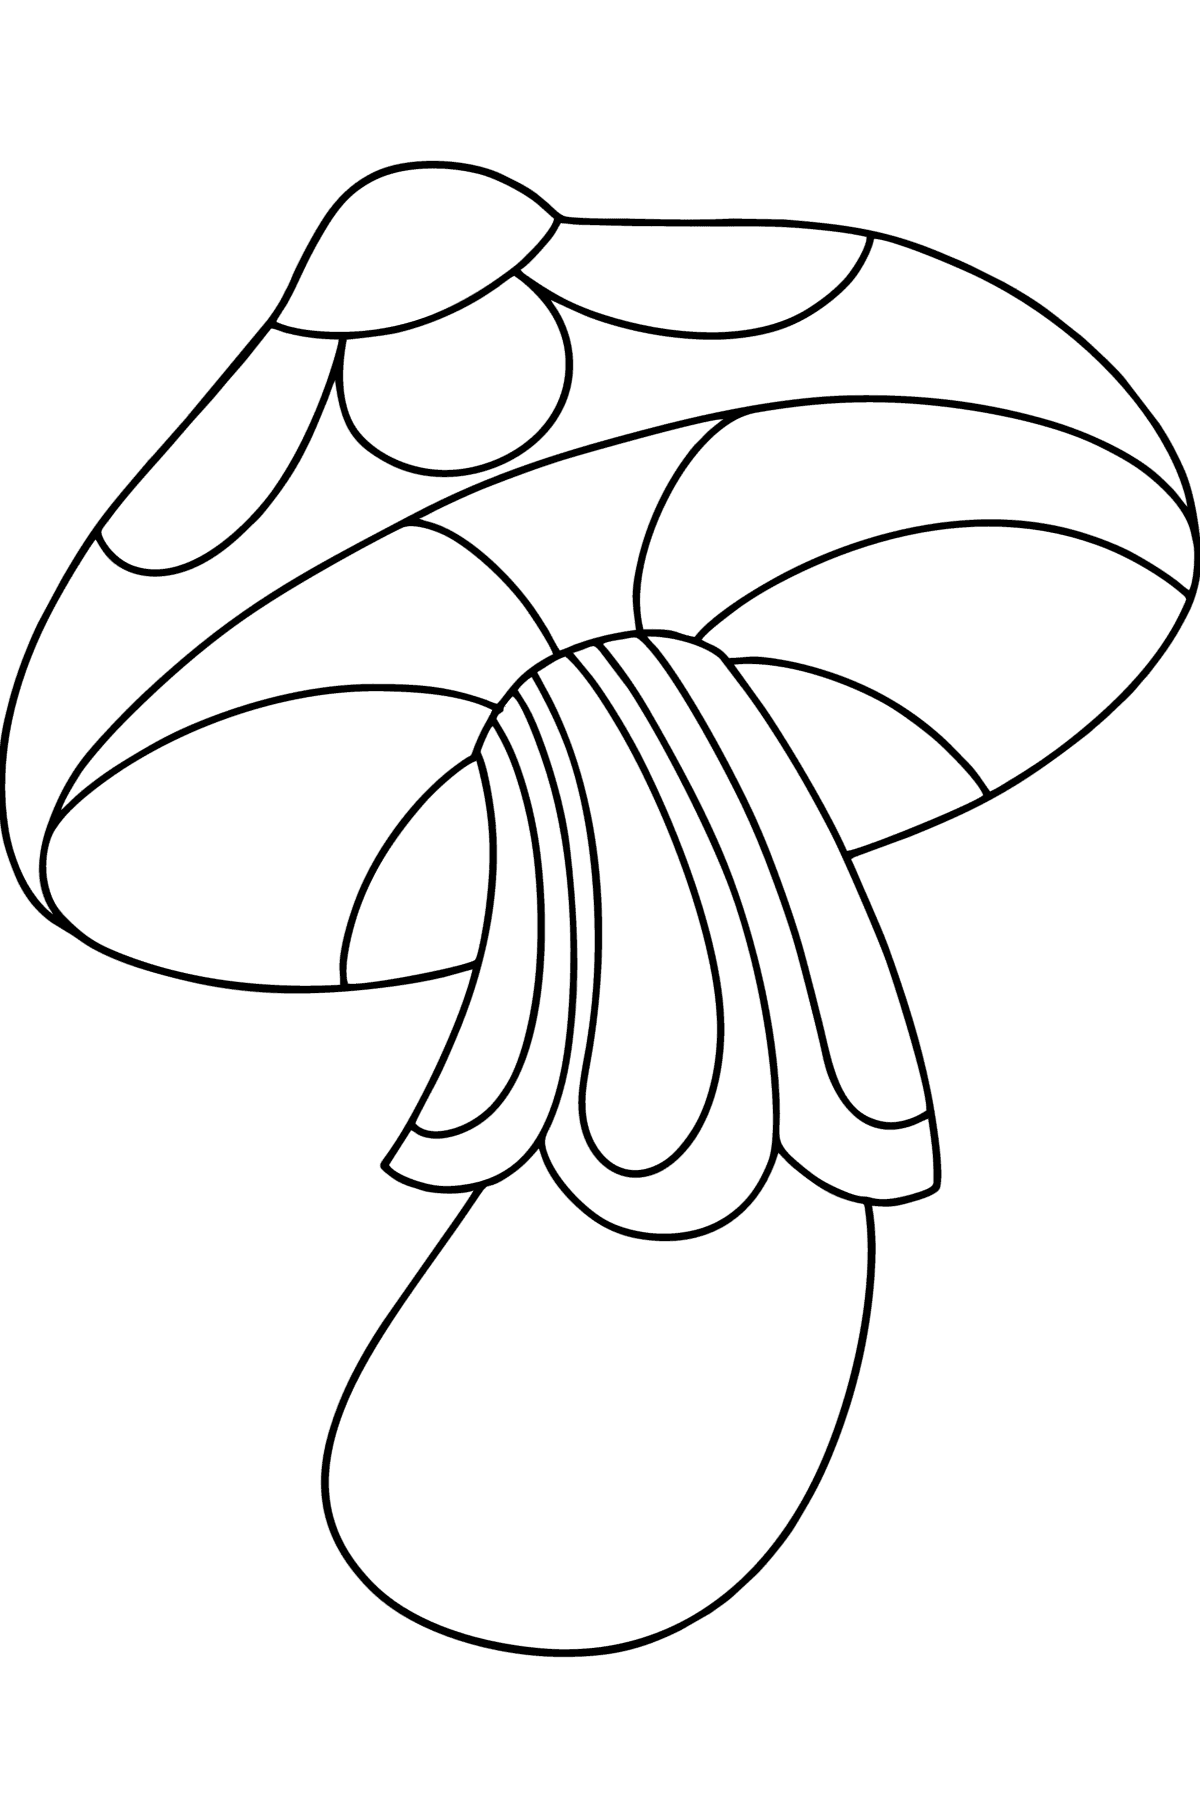 Kleurplaat Zentangle-paddenstoel voor kinderen - kleurplaten voor kinderen